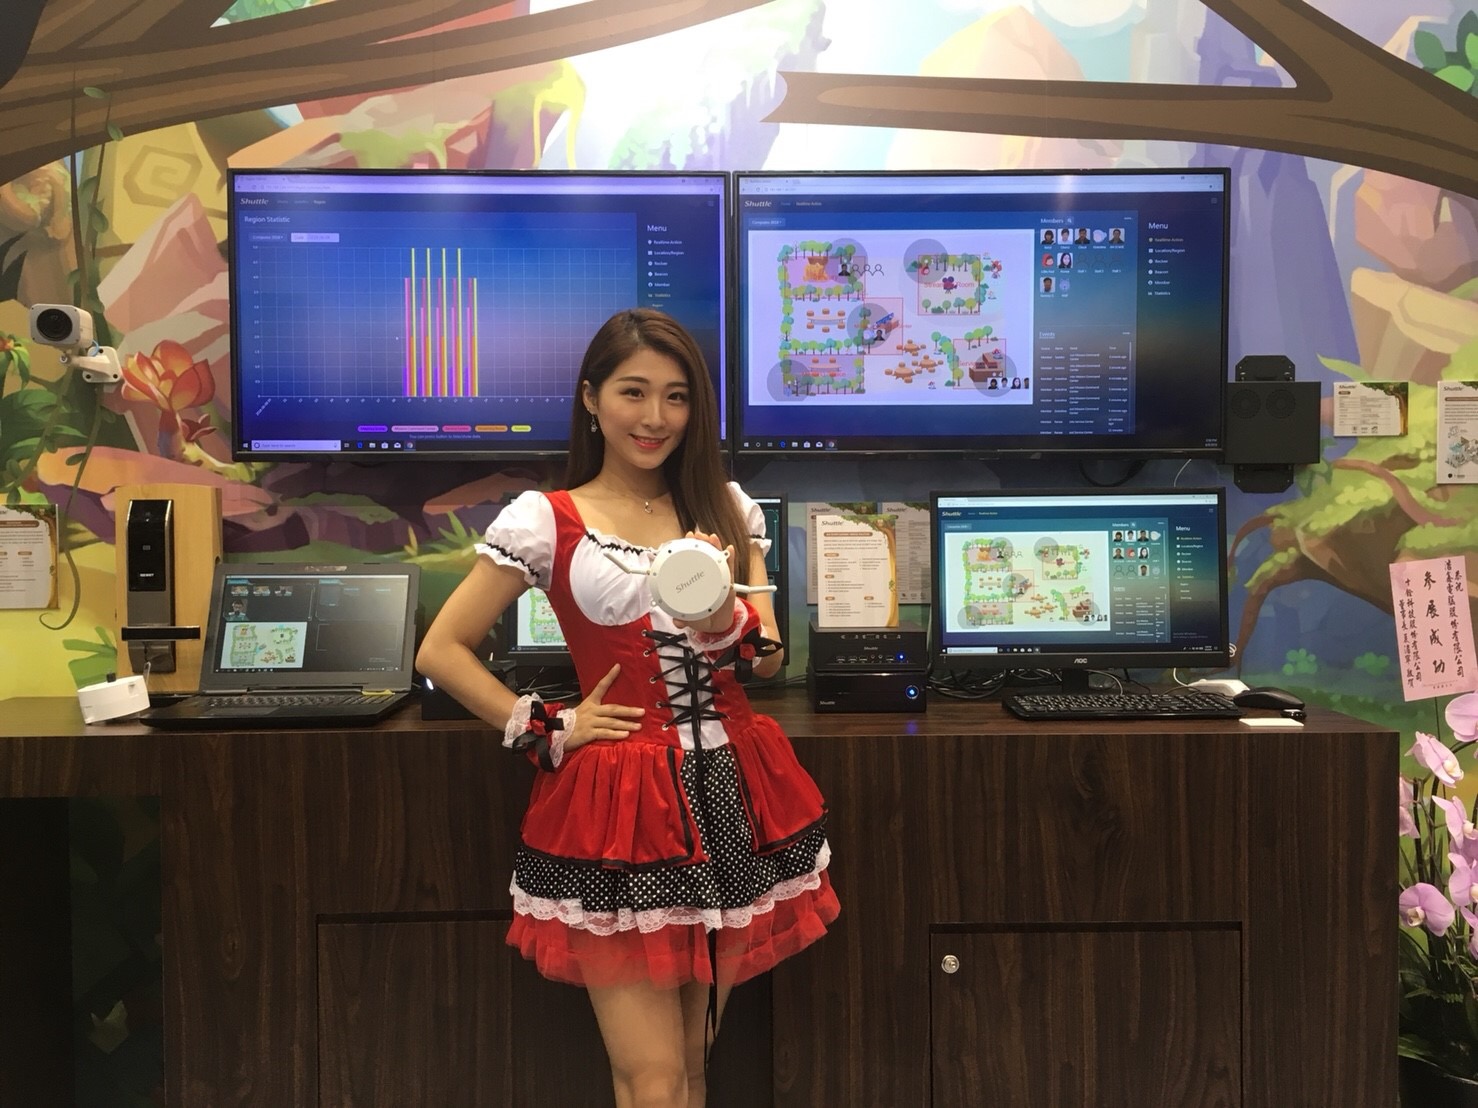 浩鑫COMPUTEX攤位設計大走遊戲風 多款軟硬整合方案 聚焦直播、數位看板與人臉辨識應用